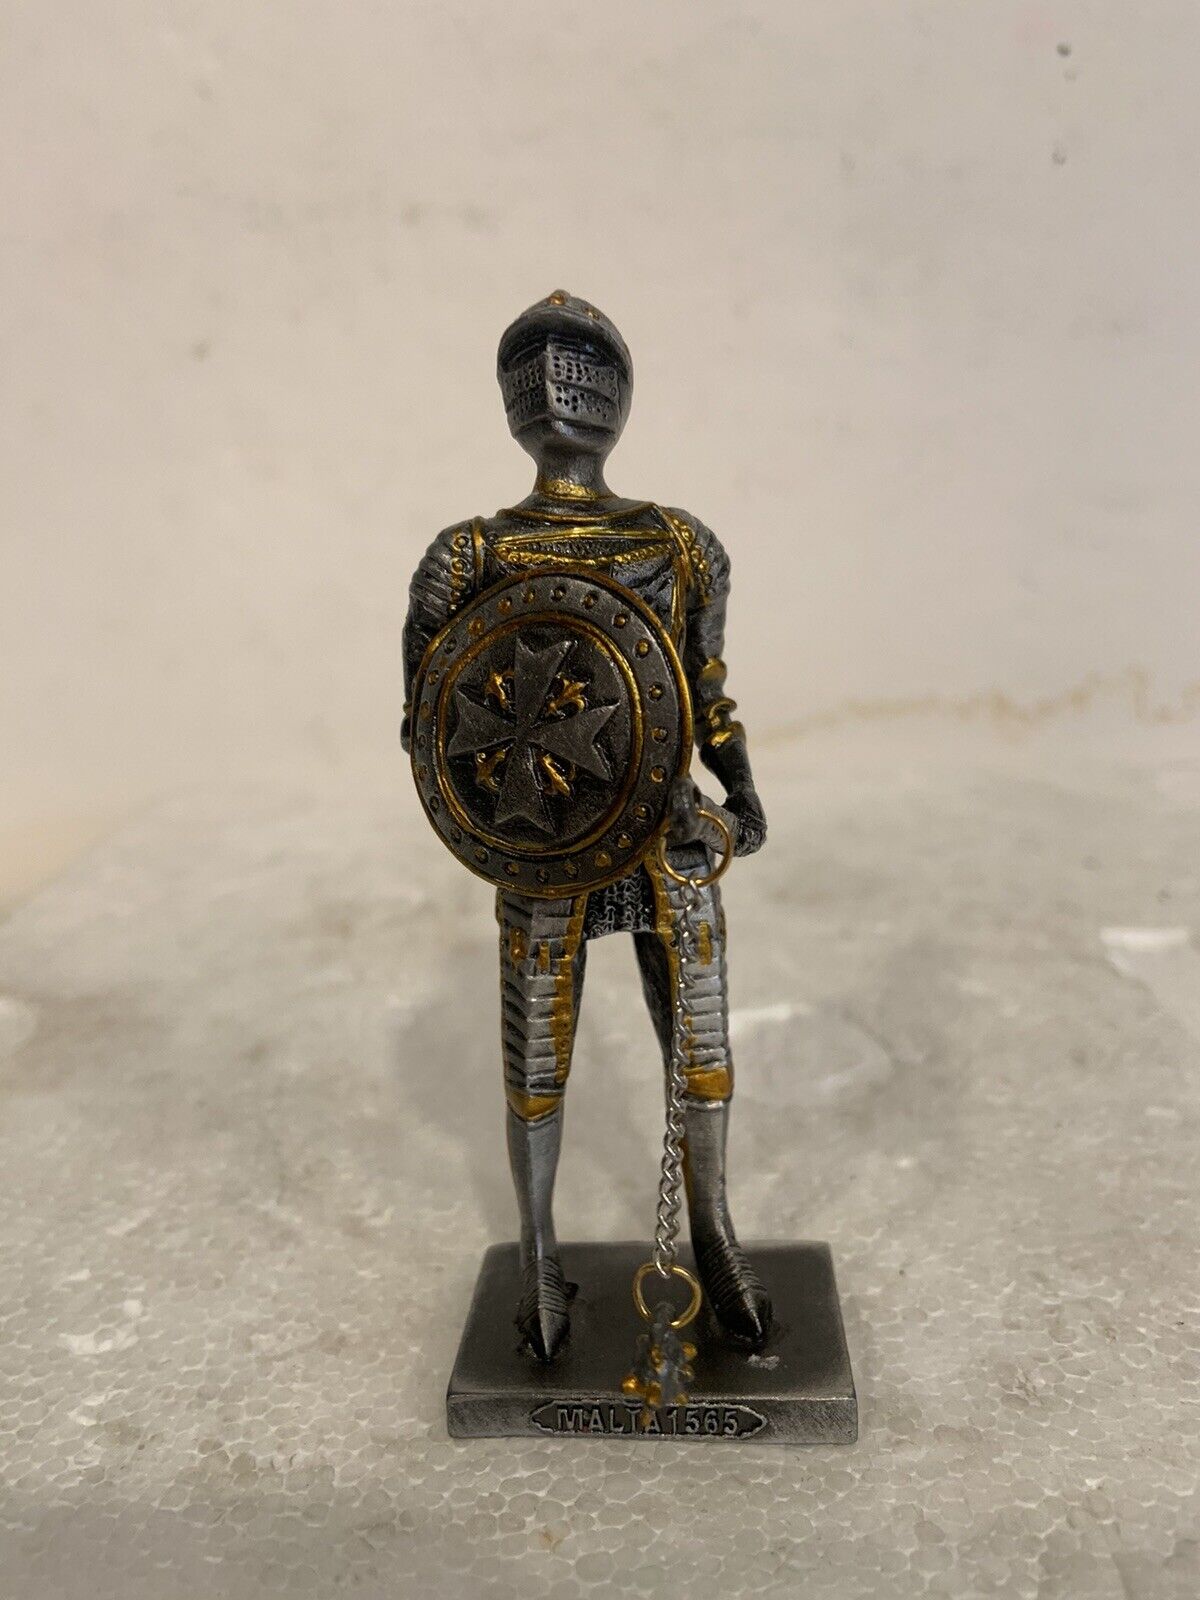 Vintage Mini Knight Figurine Malta 1565 Statue 4” Metal/Pewter RARE See Photos